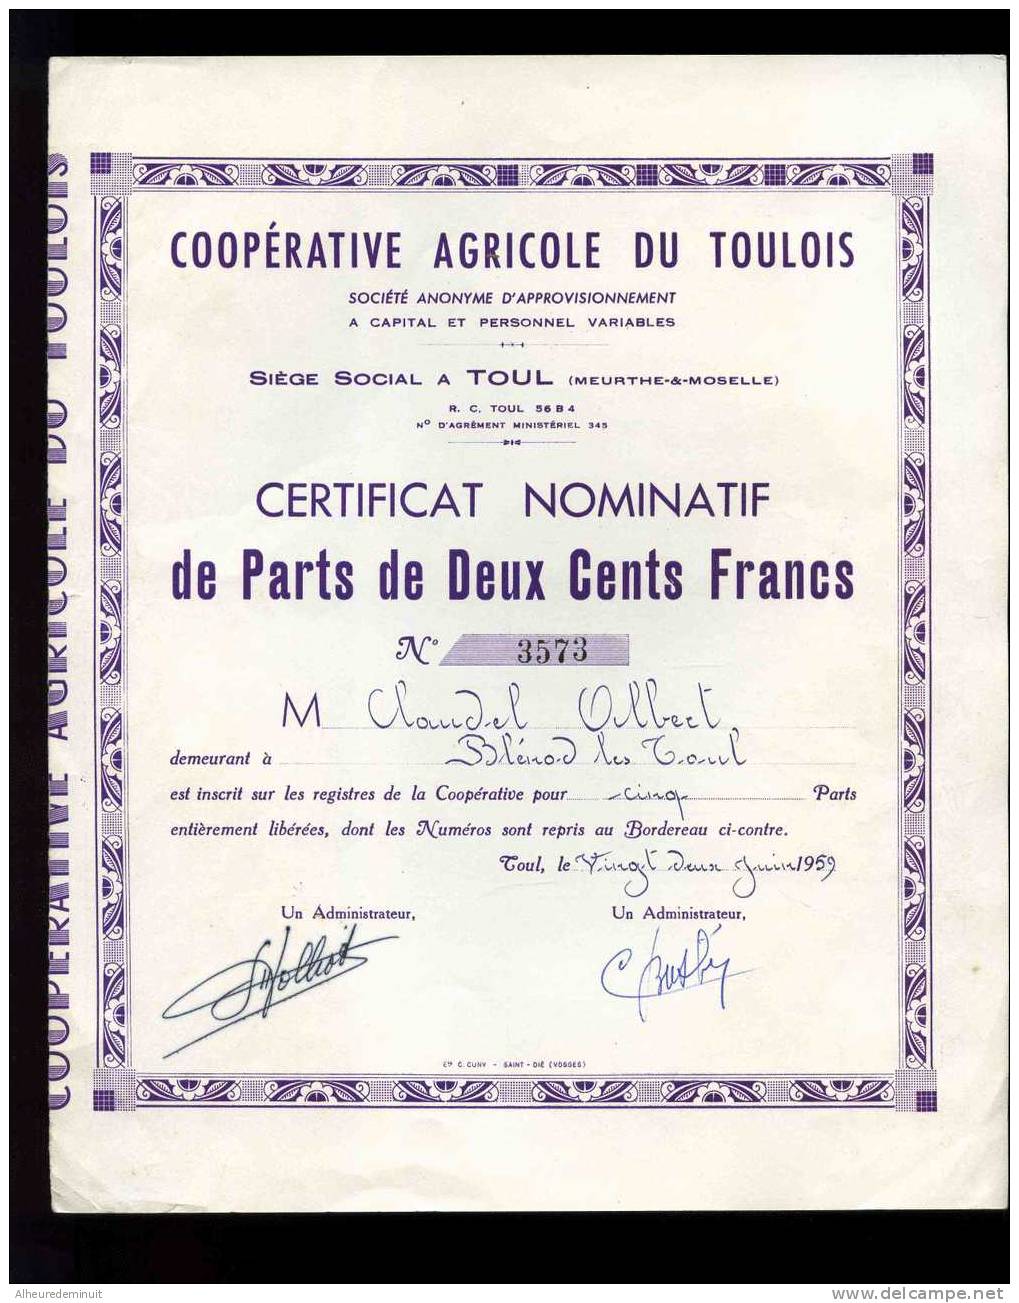 COOPERATIVE AGRICOLE DU TOULOIS"CERTIFICAT NOMITATIF DE PARTS DE 200 CENTS FRANCS"1959"5 Parts"anciens Francs - Agriculture